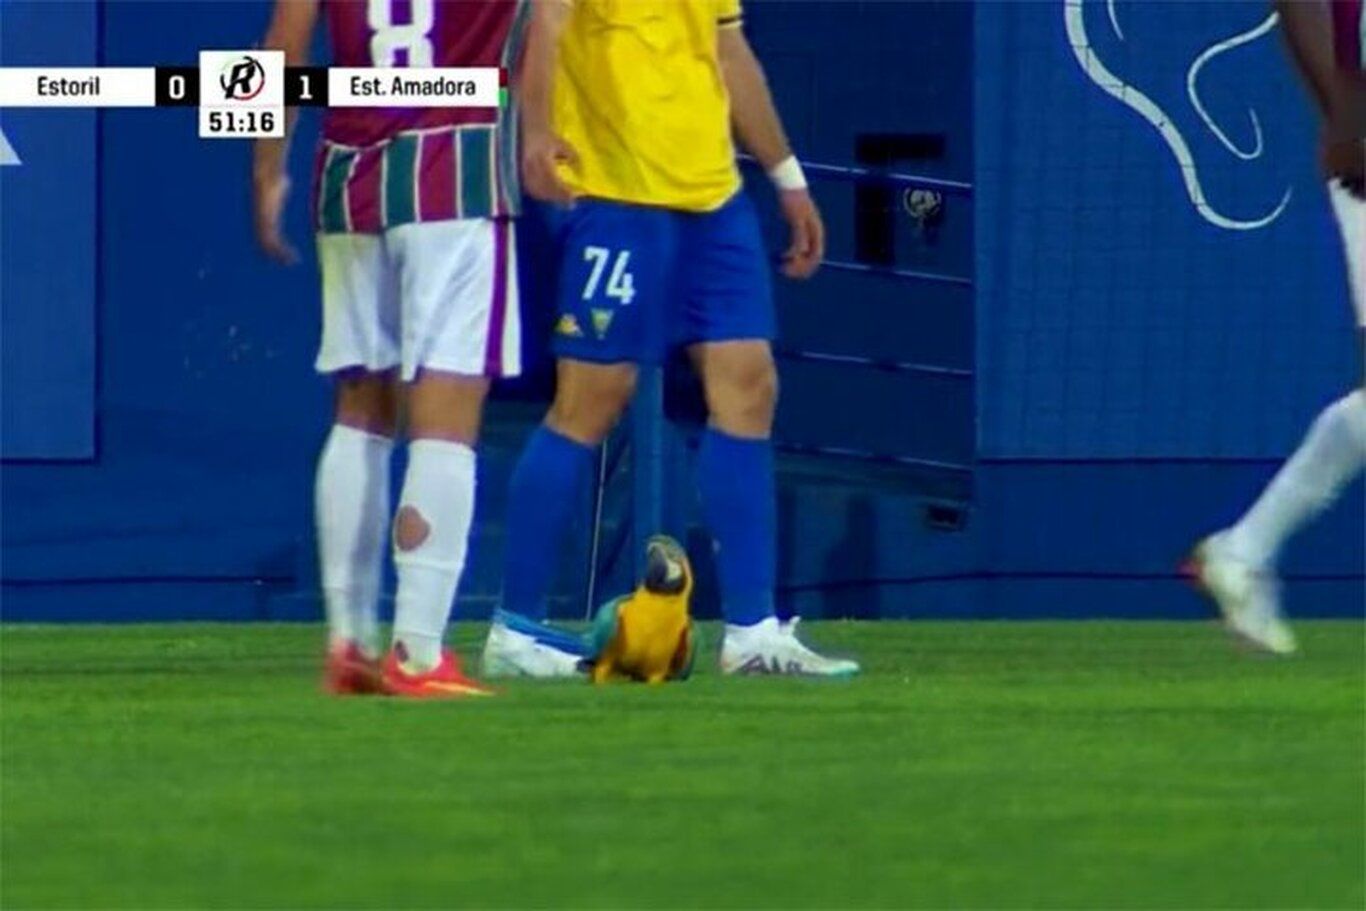 (ویدئو) توقف مسابقه فوتبال در پرتغال بخاطر حضور یک طوطی در زمین